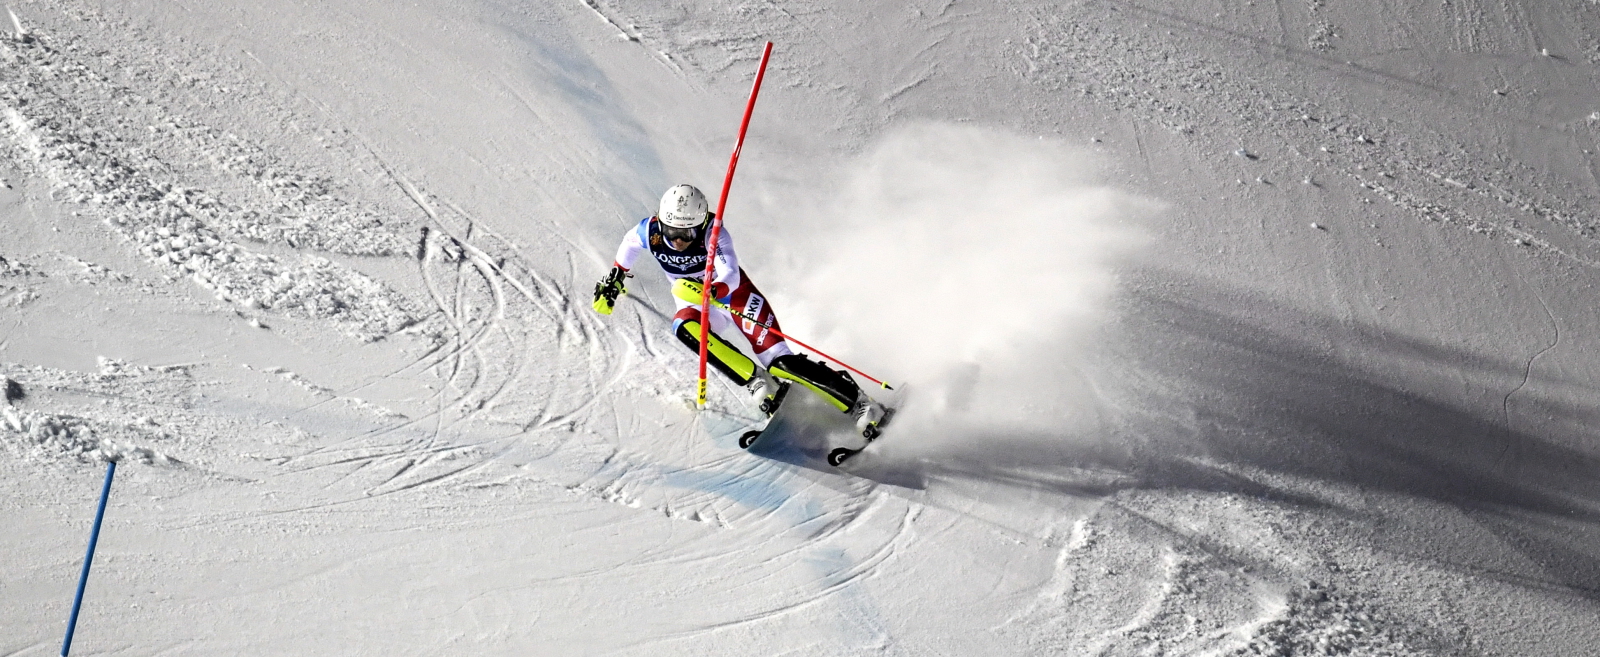 Mistrzostwa Świata w narciarstwie alepjskim w szwedzkim Are. Fot. PAP/EPA/ANDERS WIKLUND